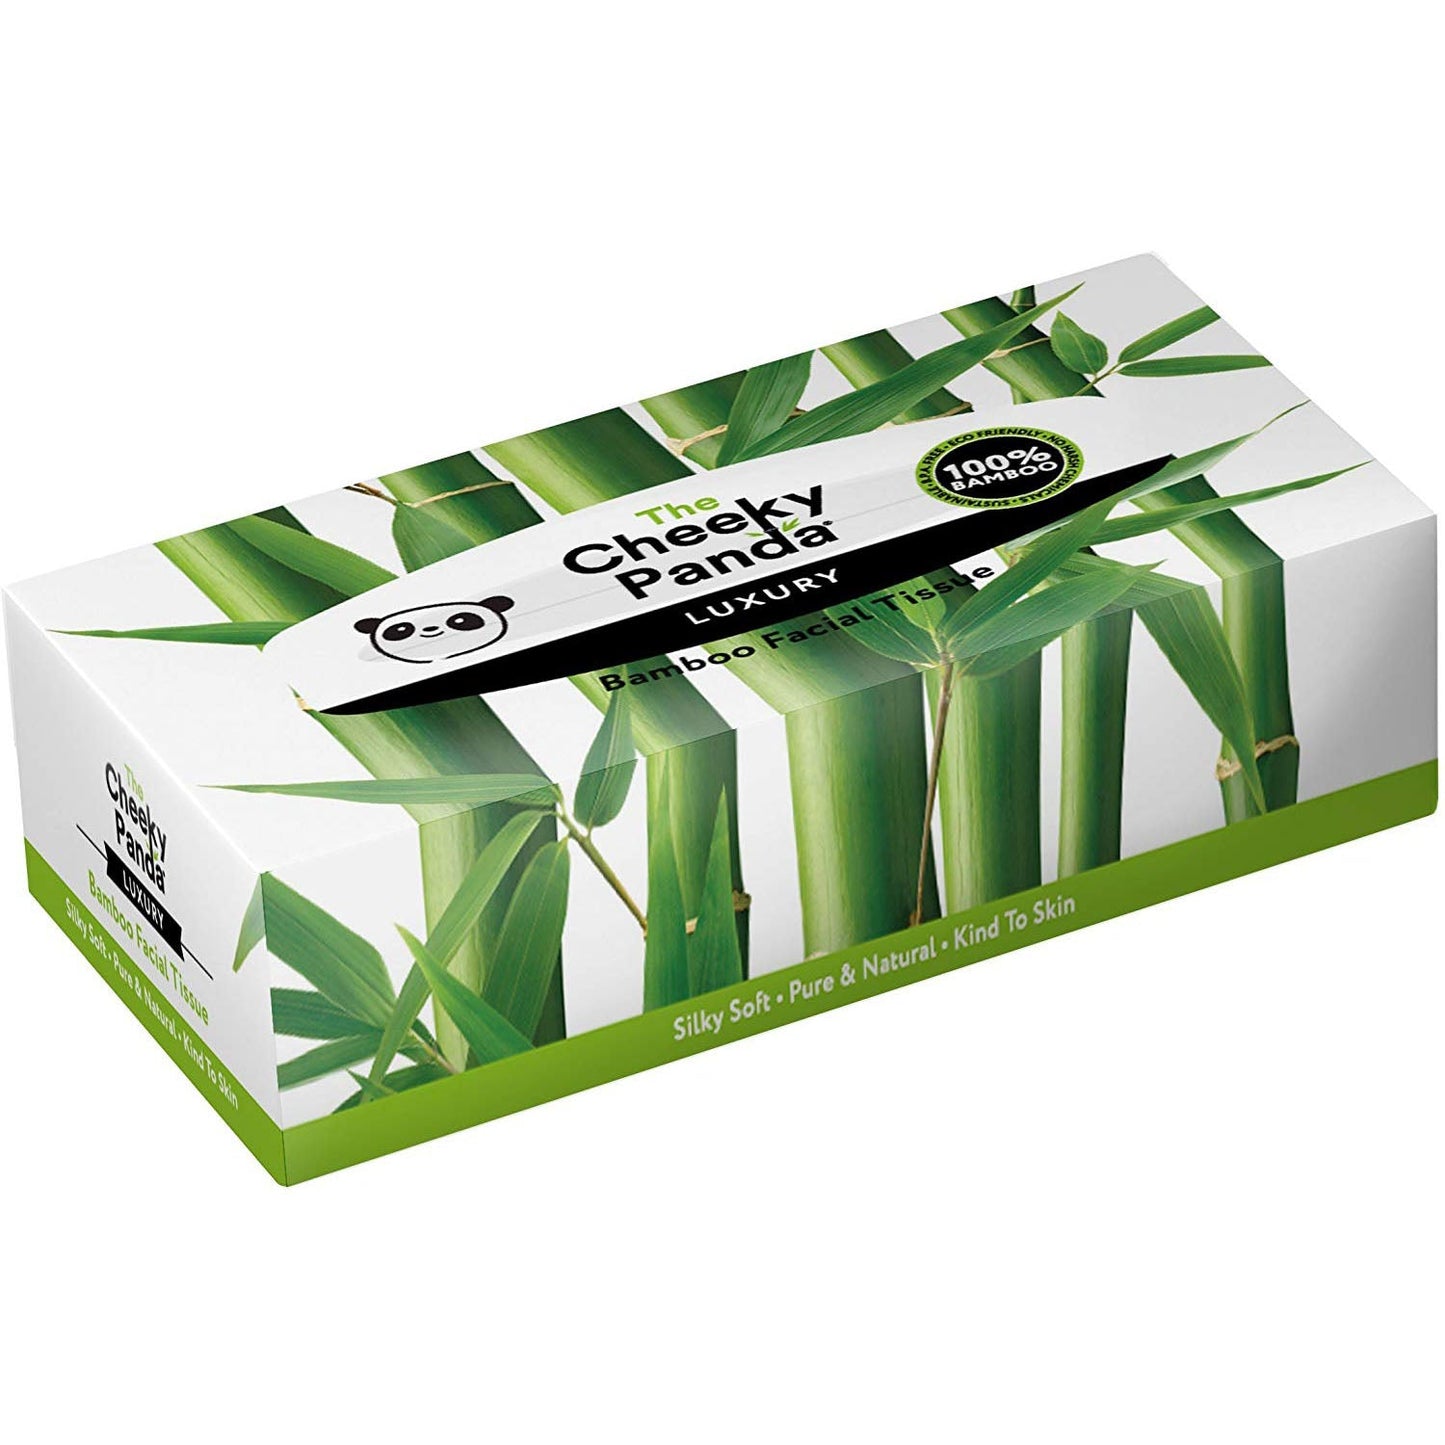 Cheeky Panda 100% Bamboo Facial Tissue Flat Box 3ply 80 Sheets - Just Natural